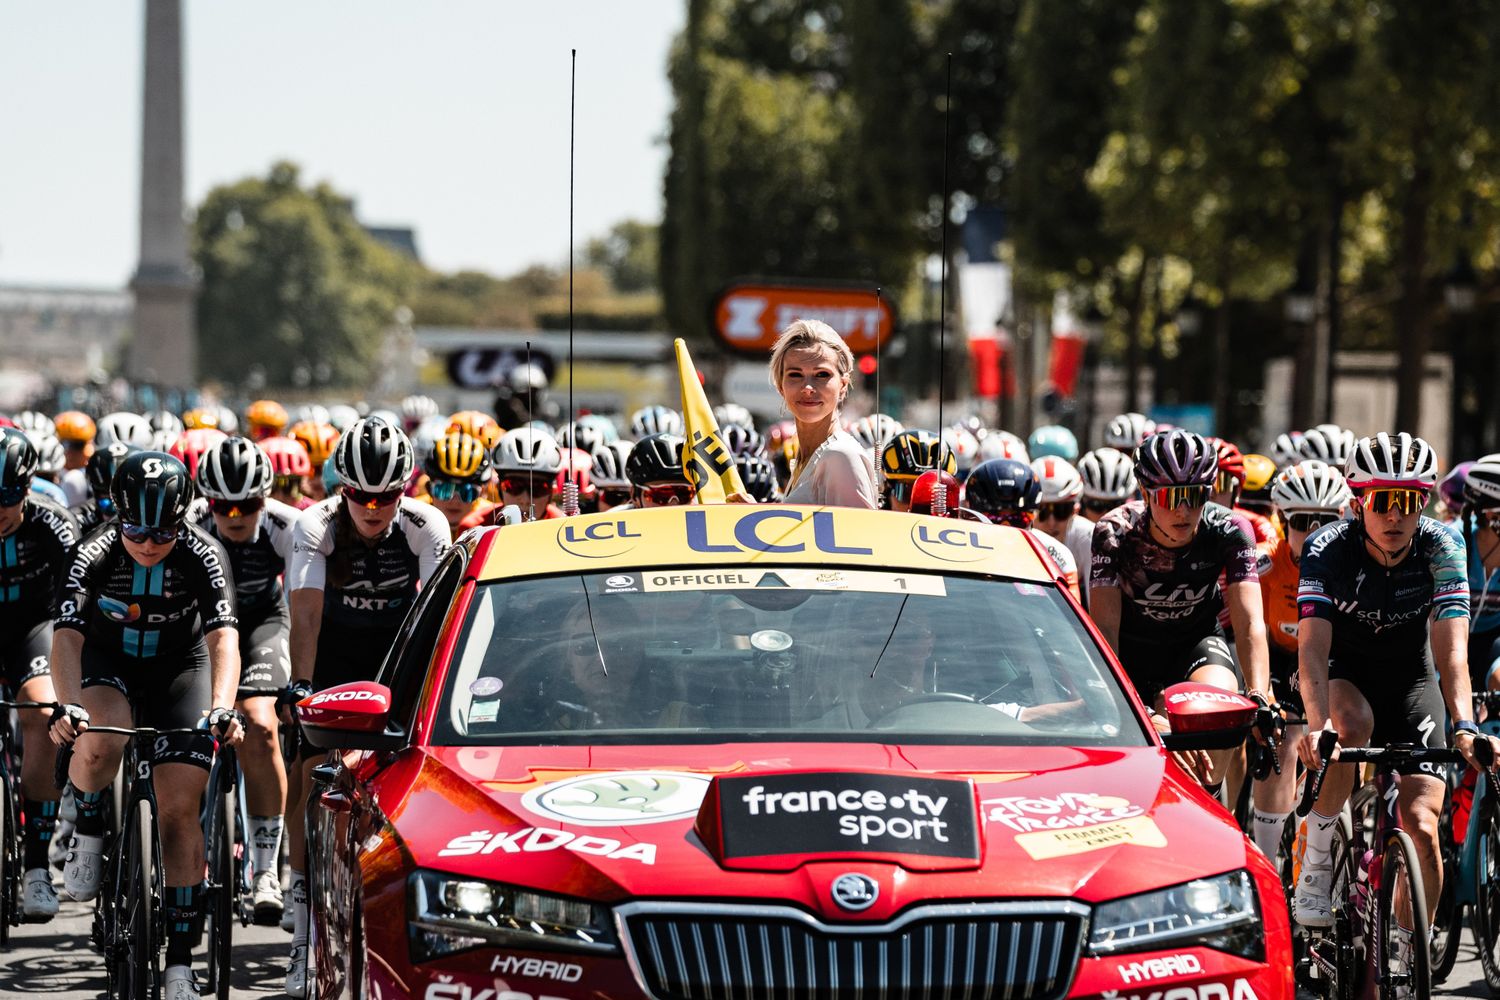 Le Tour de France Féminin en Seine-et-Marne : plusieurs routes coupées